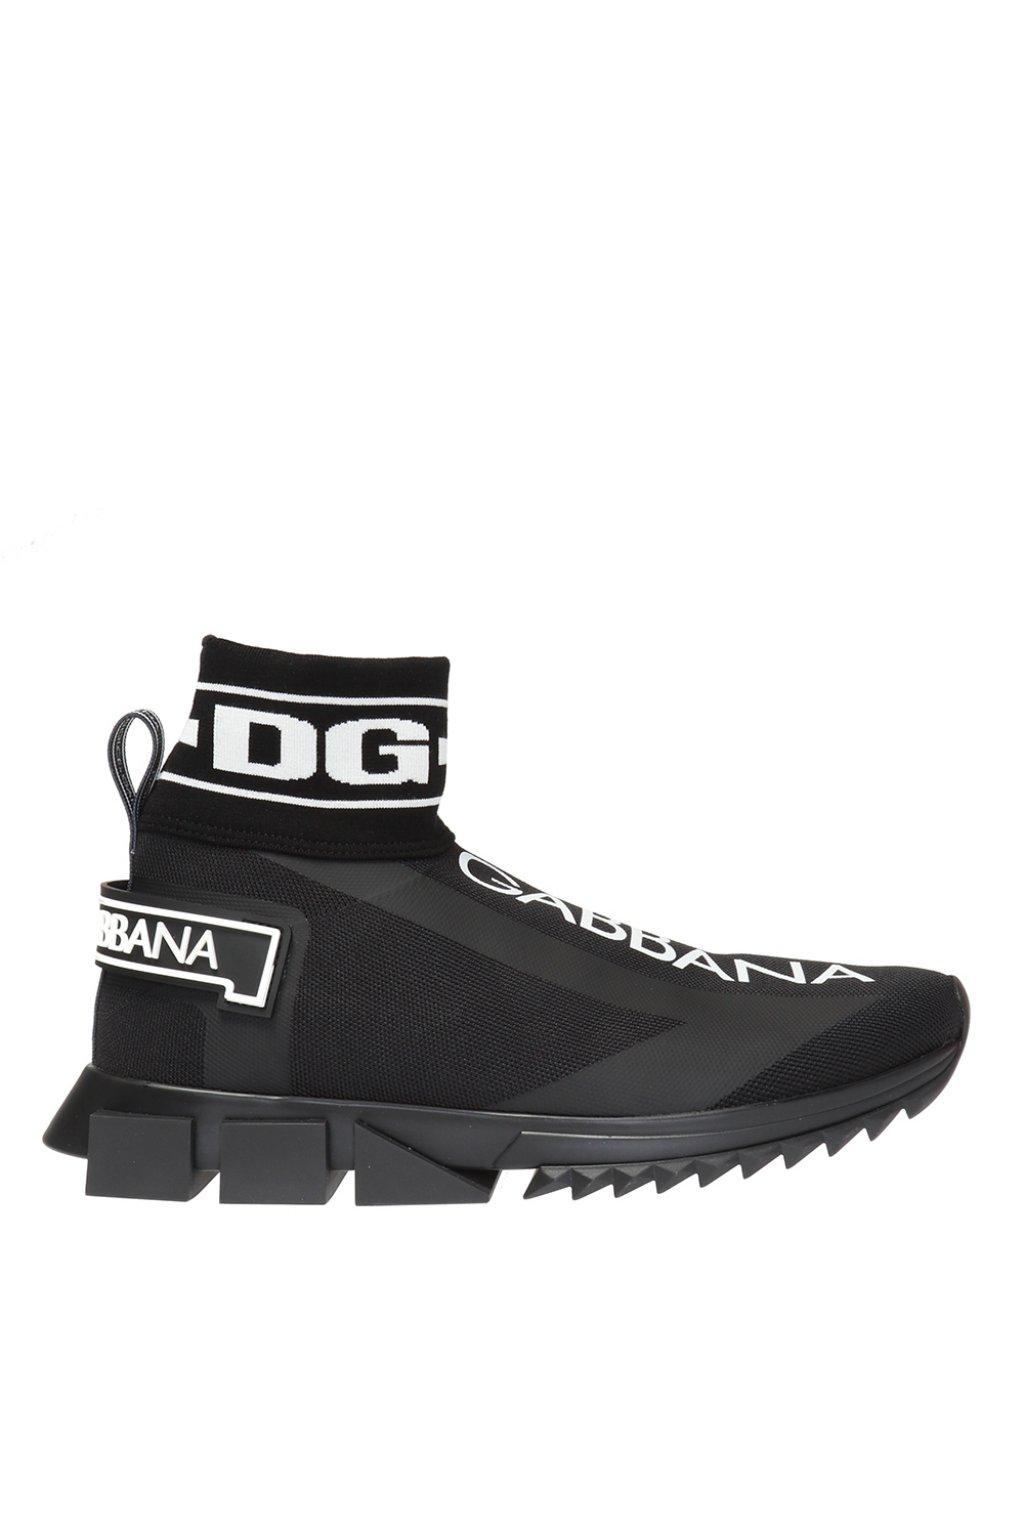 Dolce & Gabbana Rubber Logo Print Sock Sneakers in Black for Men - Save ...